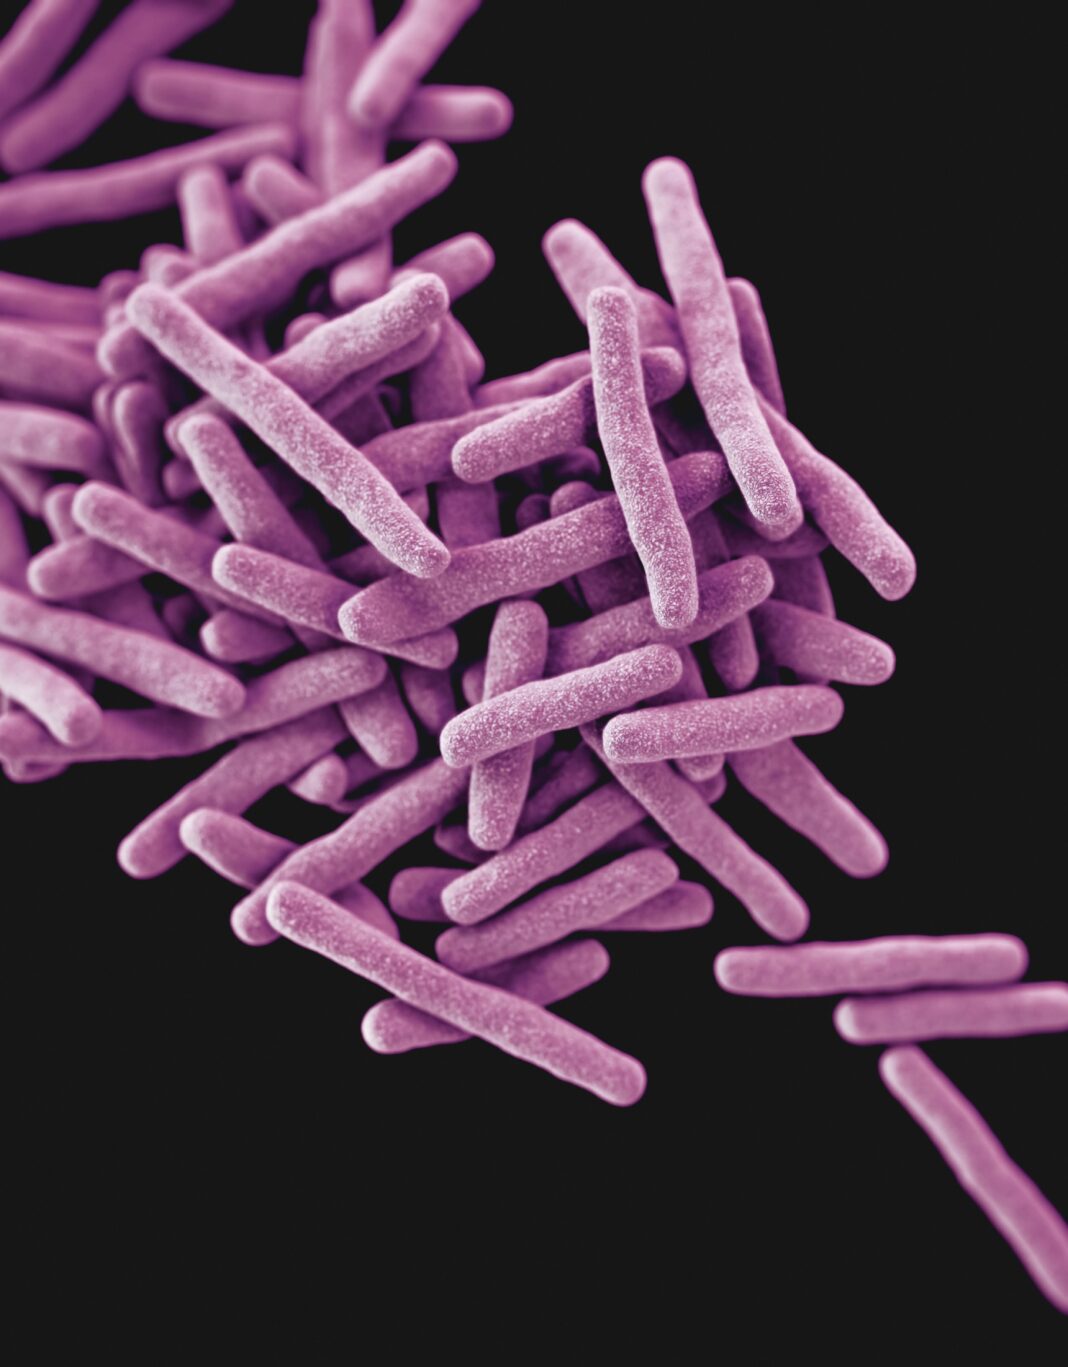 Bacteria studiată este înrudită îndeaproape cu cea responsabilă pentru tuberculoză. Foto: Mycobacterium tuberculosis. Sursă: Unsplash